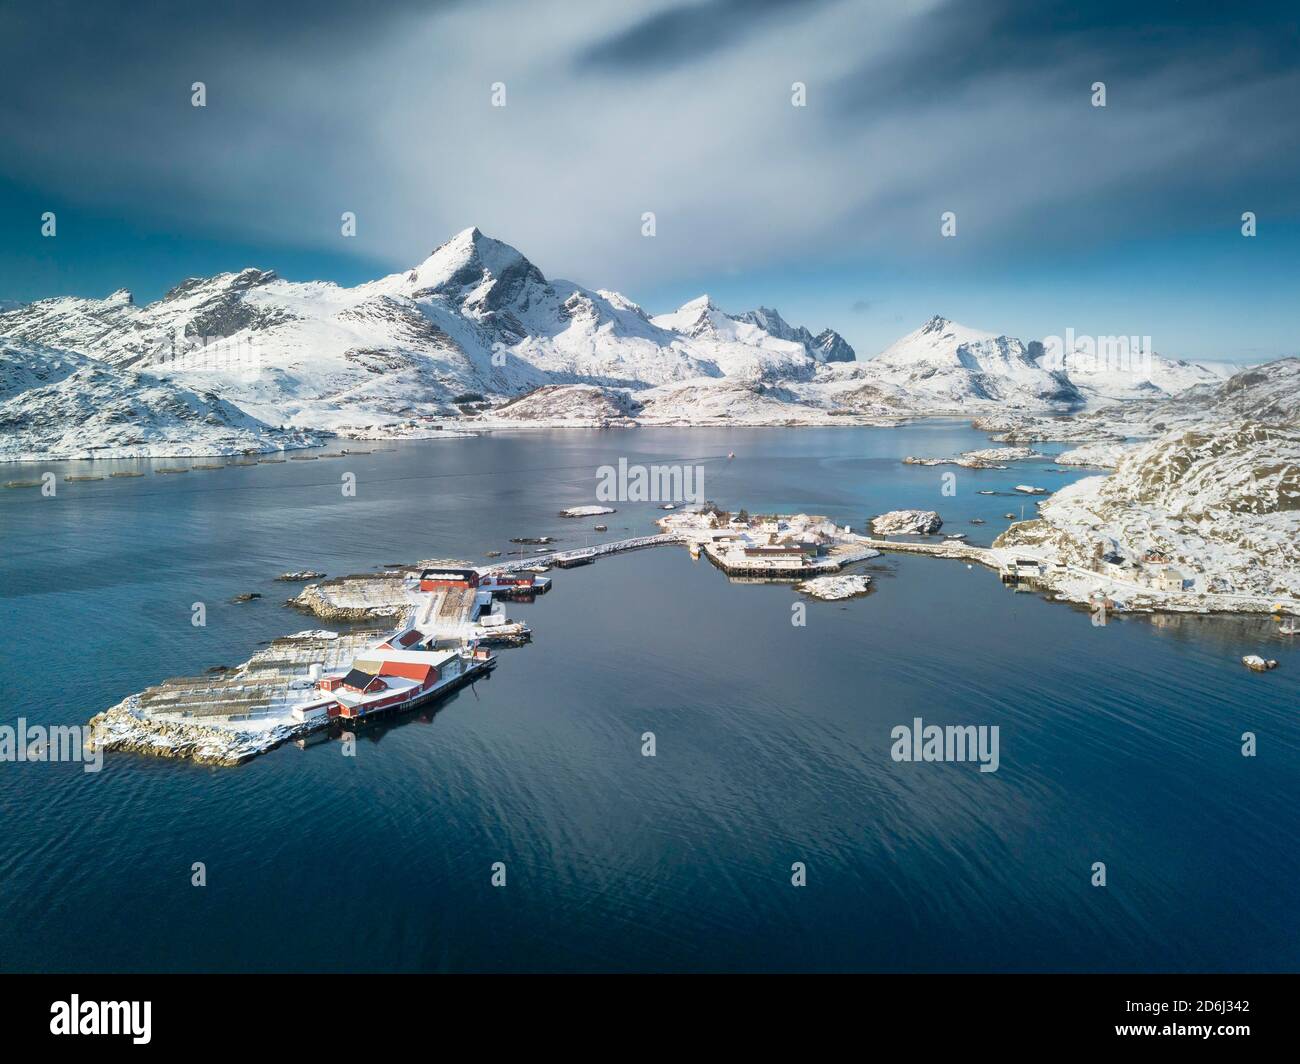 Luftbild, Fjord mit verschneiten Bergen, kleine Inseln mit Fischfarmen und Stockfisch-Trockenracks, Sound, Nordland, Lofoten, Norwegen Stockfoto